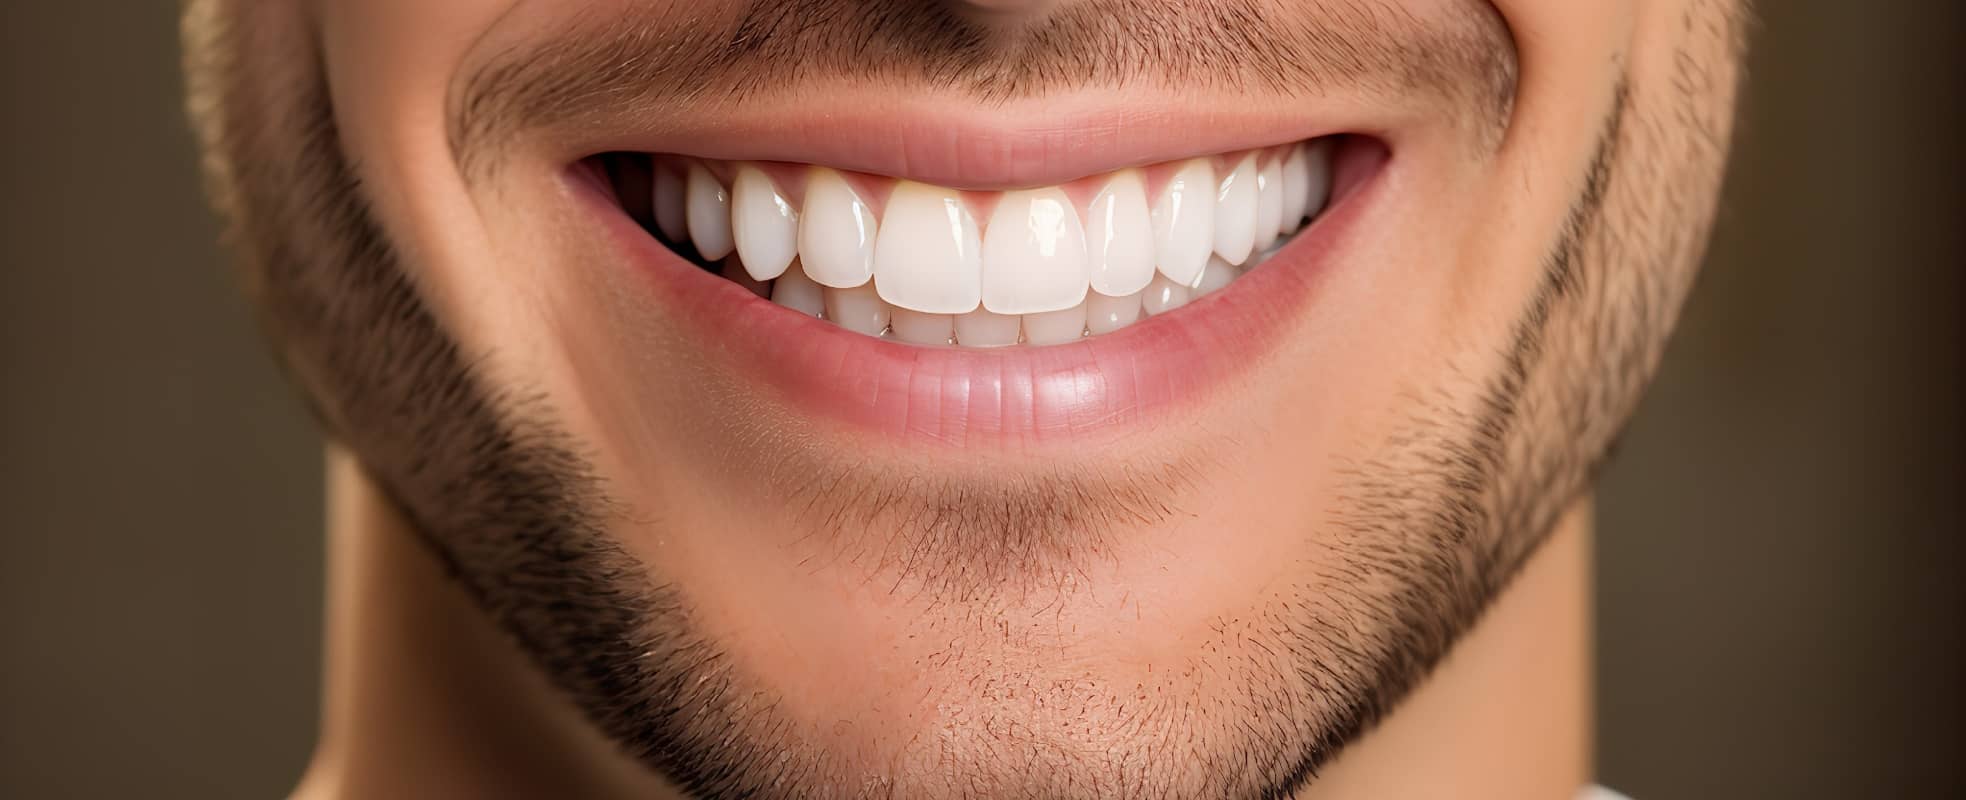 Comment obtenir un sourire parfait rapidement ? | Dr Elhyani | Paris